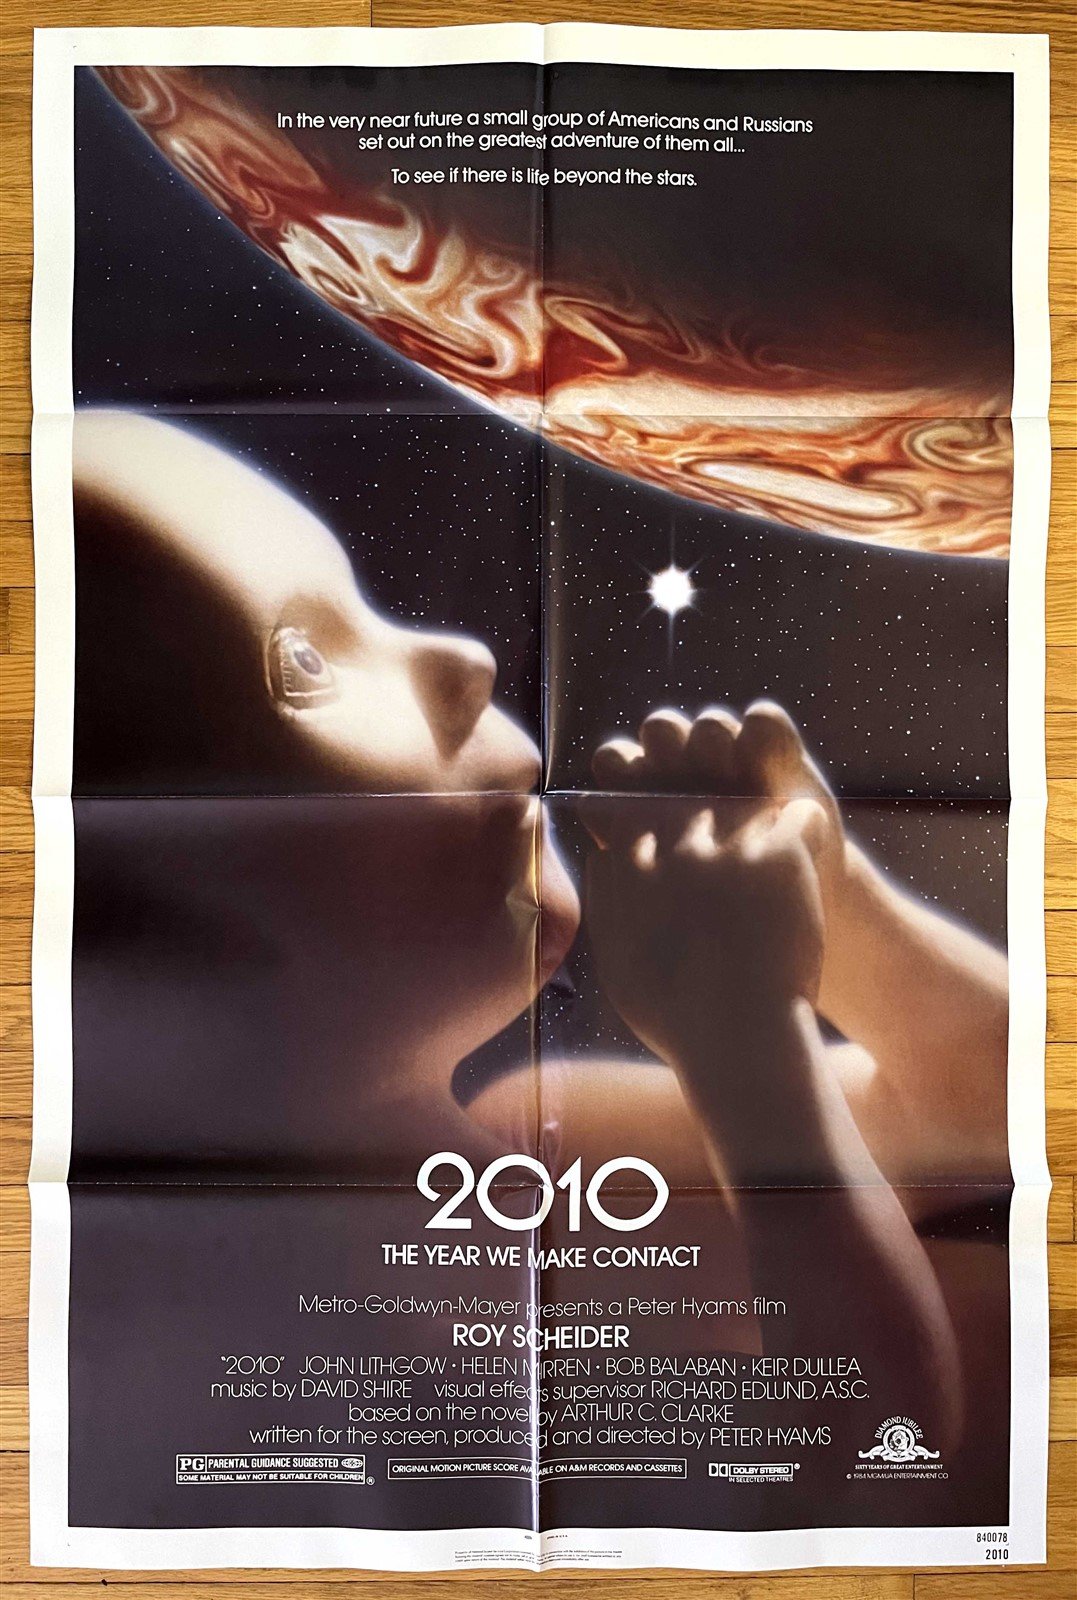 Roy Scheider 2010 Helen Mirren Keir Dullea original 27x41 movie poster 1984